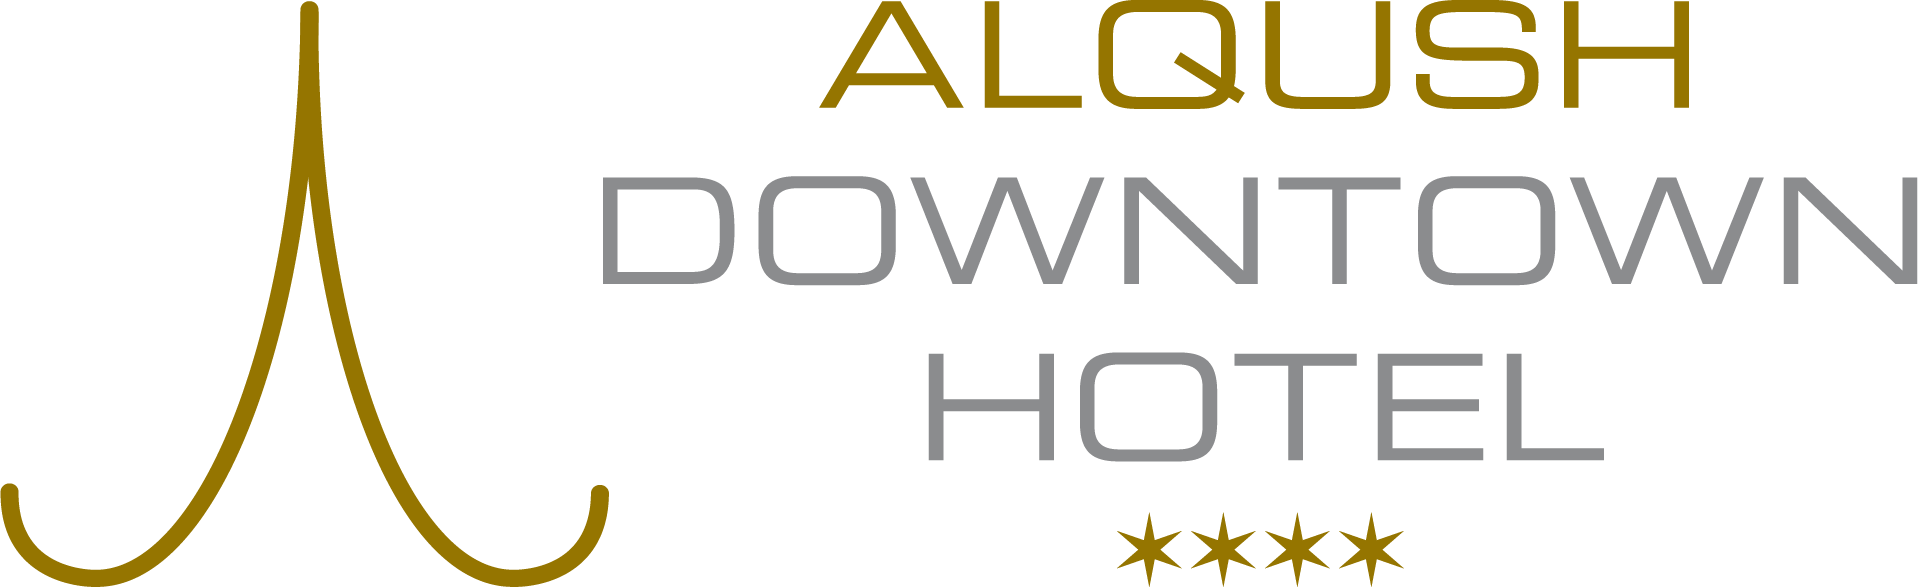 Alqush Downtown Hotel - Alqush Downtown Hotel